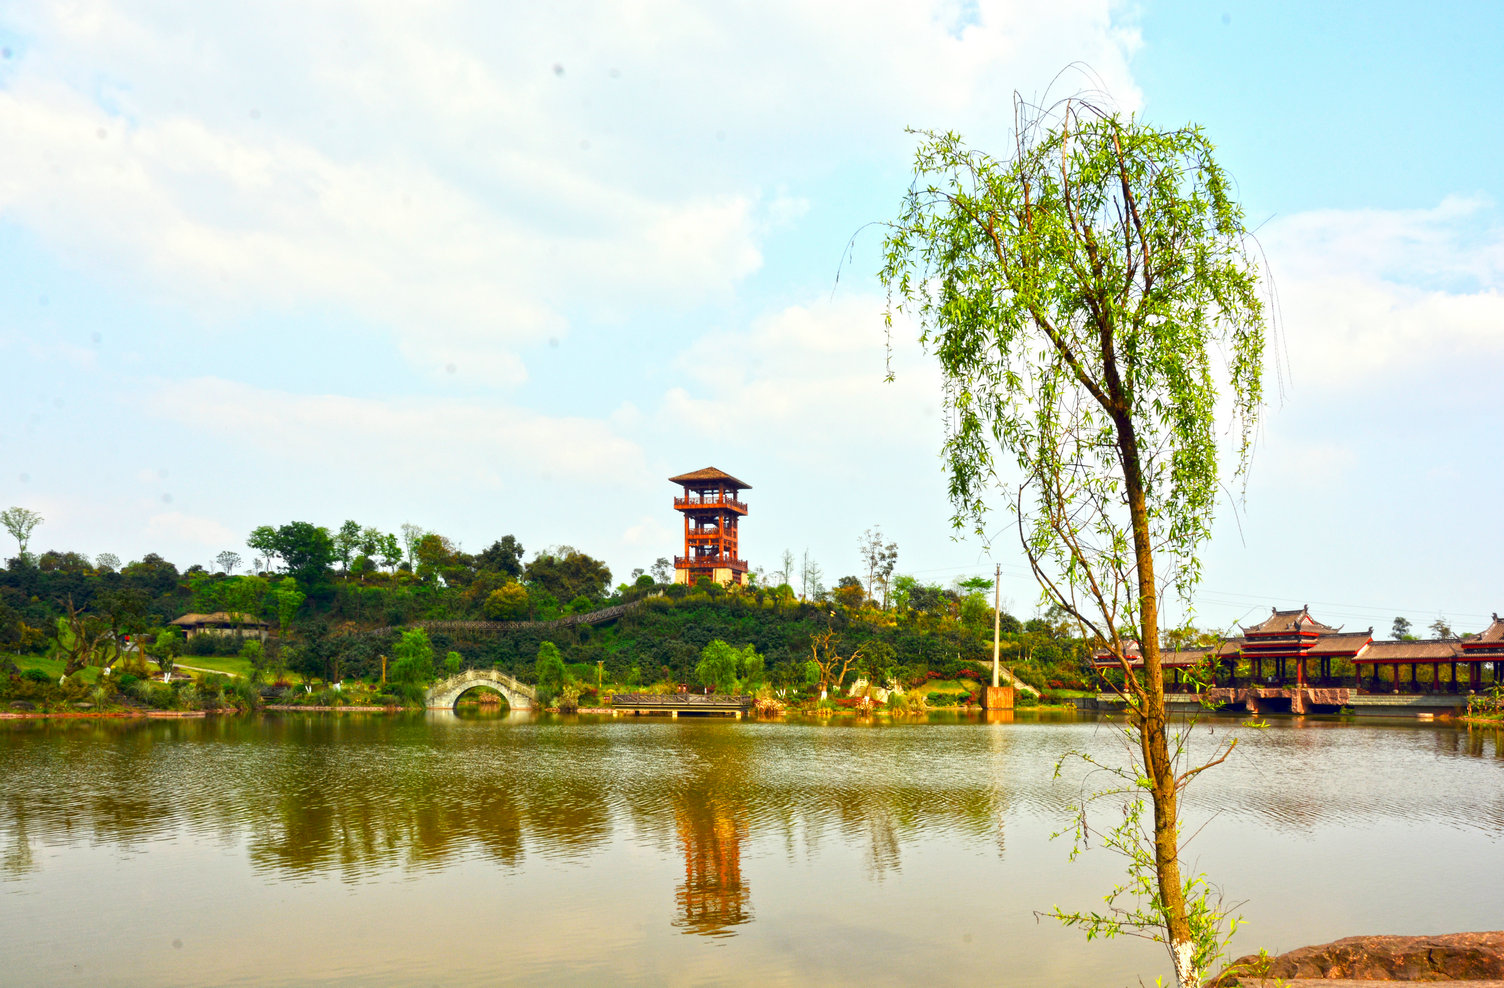 泸州张坝桂圆林风景区图片